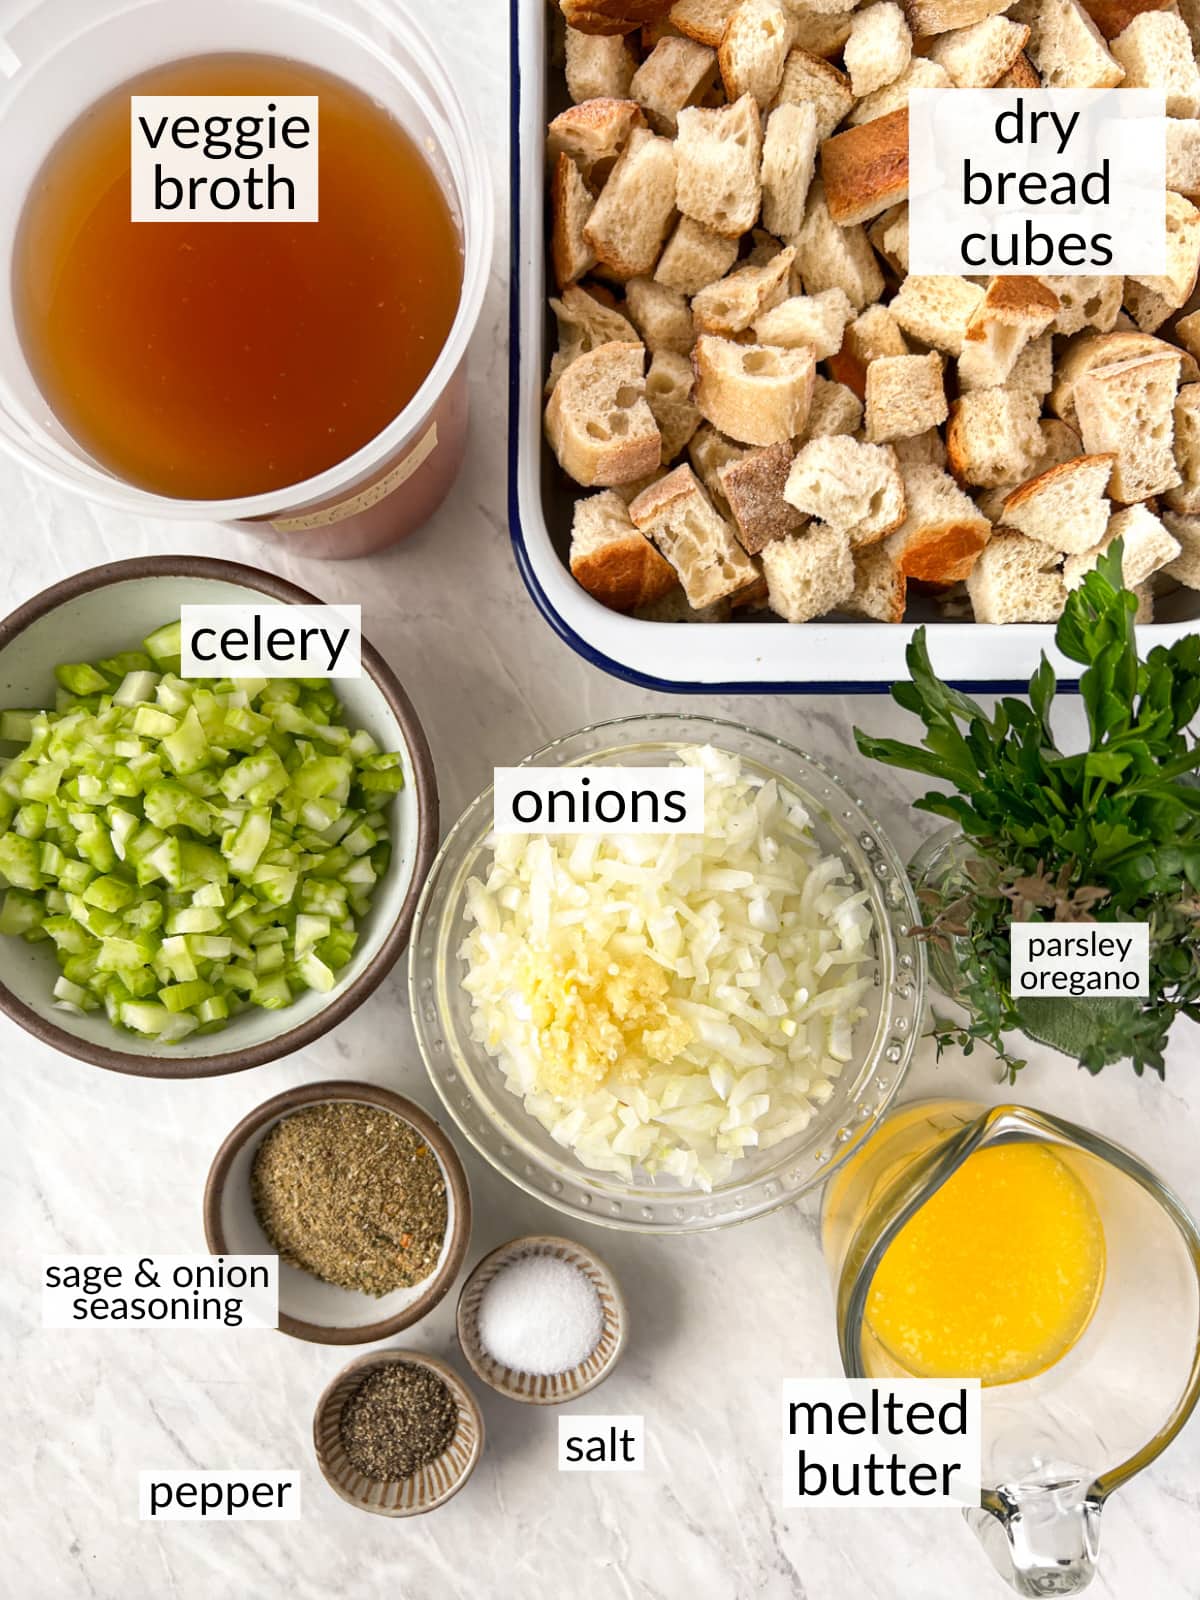 Bowls of ingredients to make vegan stuffing for Thanksgiving.